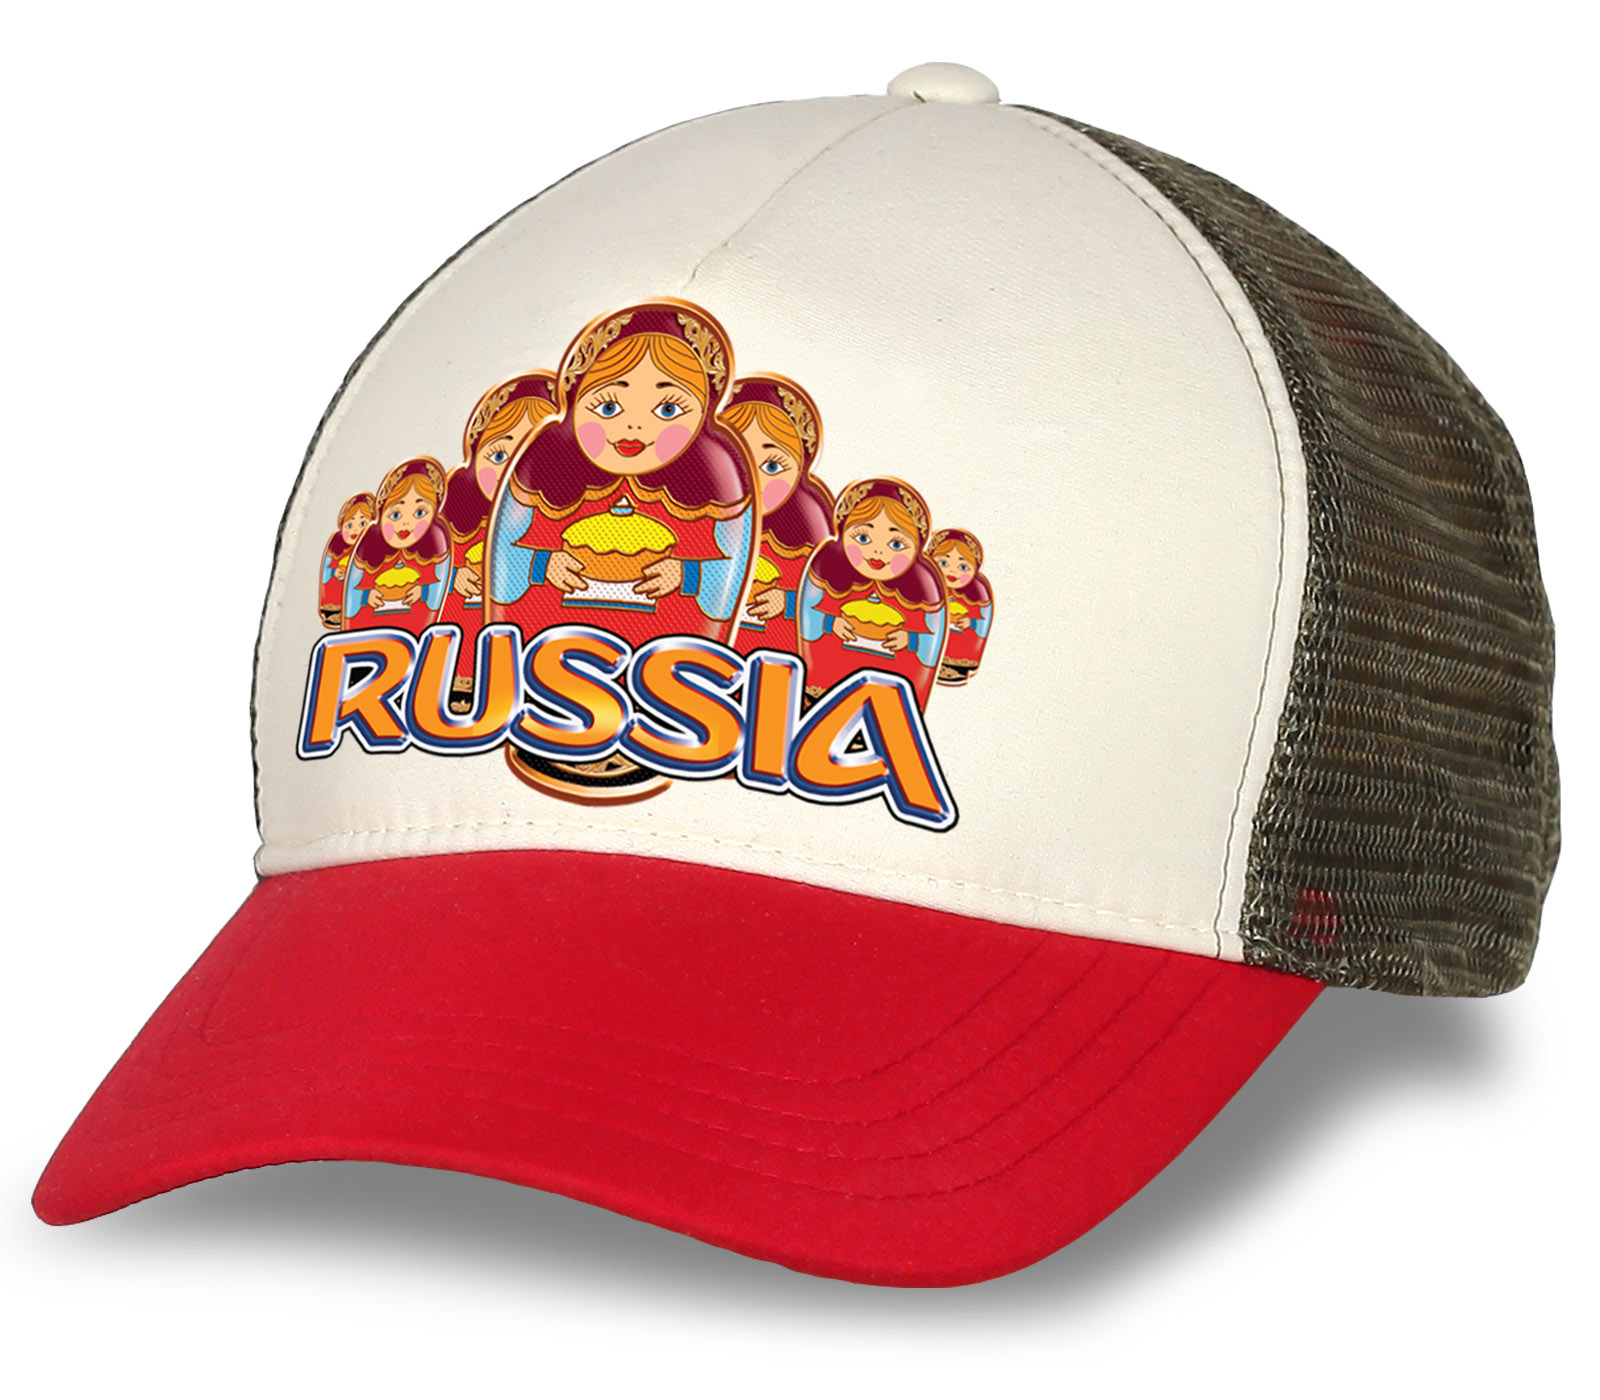 Заказать онлайн с доставкой бейсболки Russia недорого